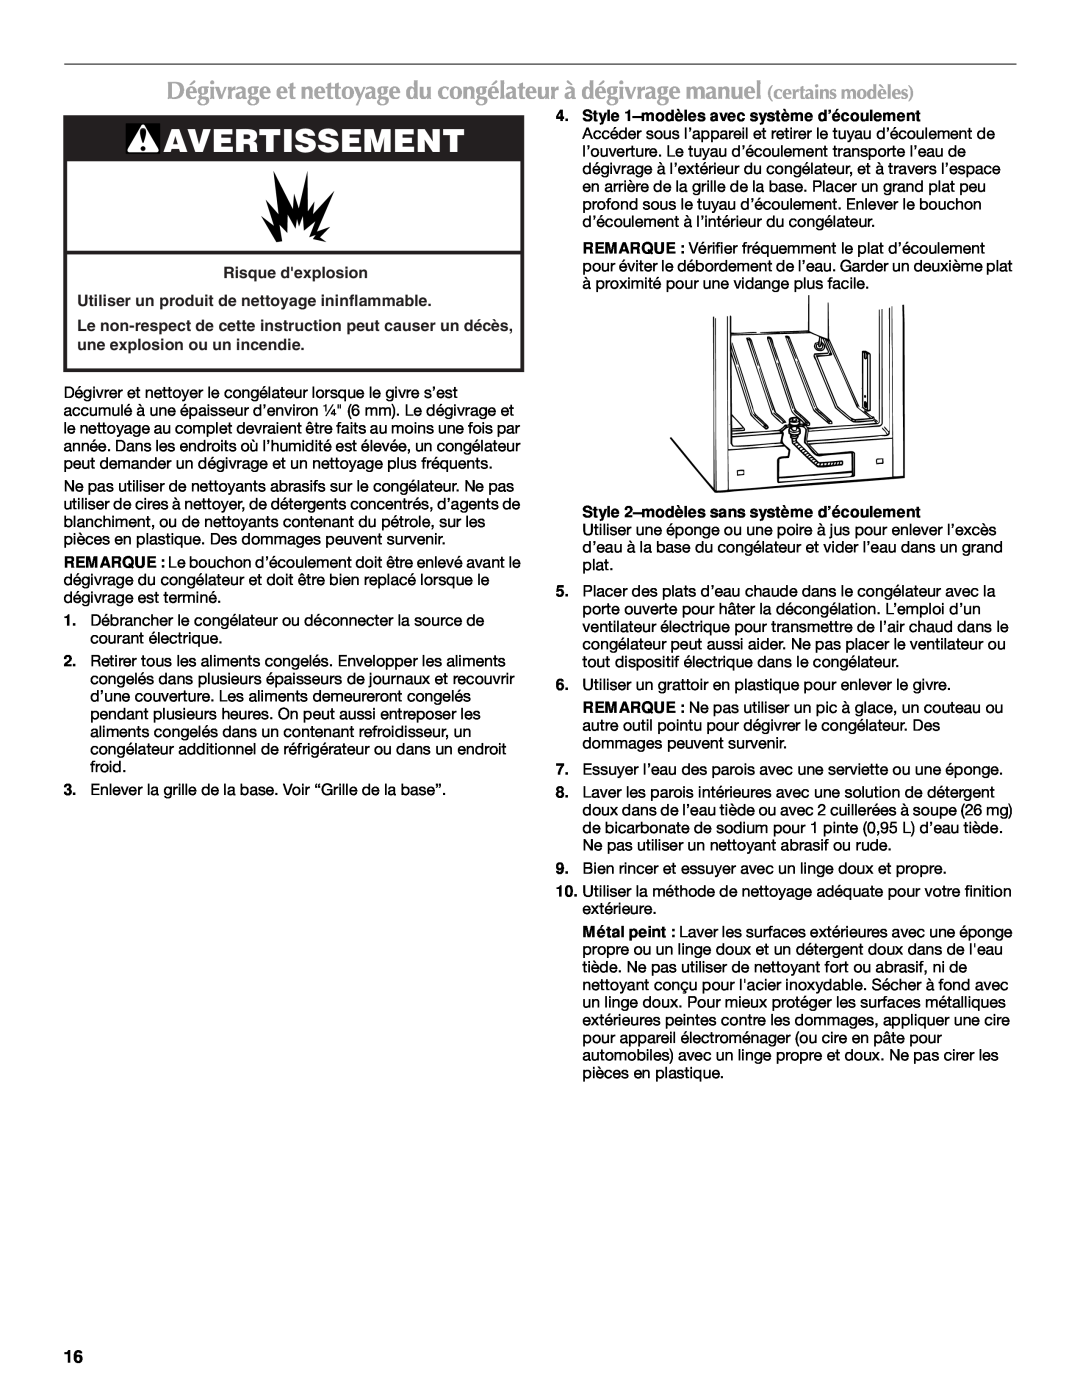 Maytag 1-82180-002 manual Avertissement, Risque dexplosion Utiliser un produit de nettoyage ininflammable 